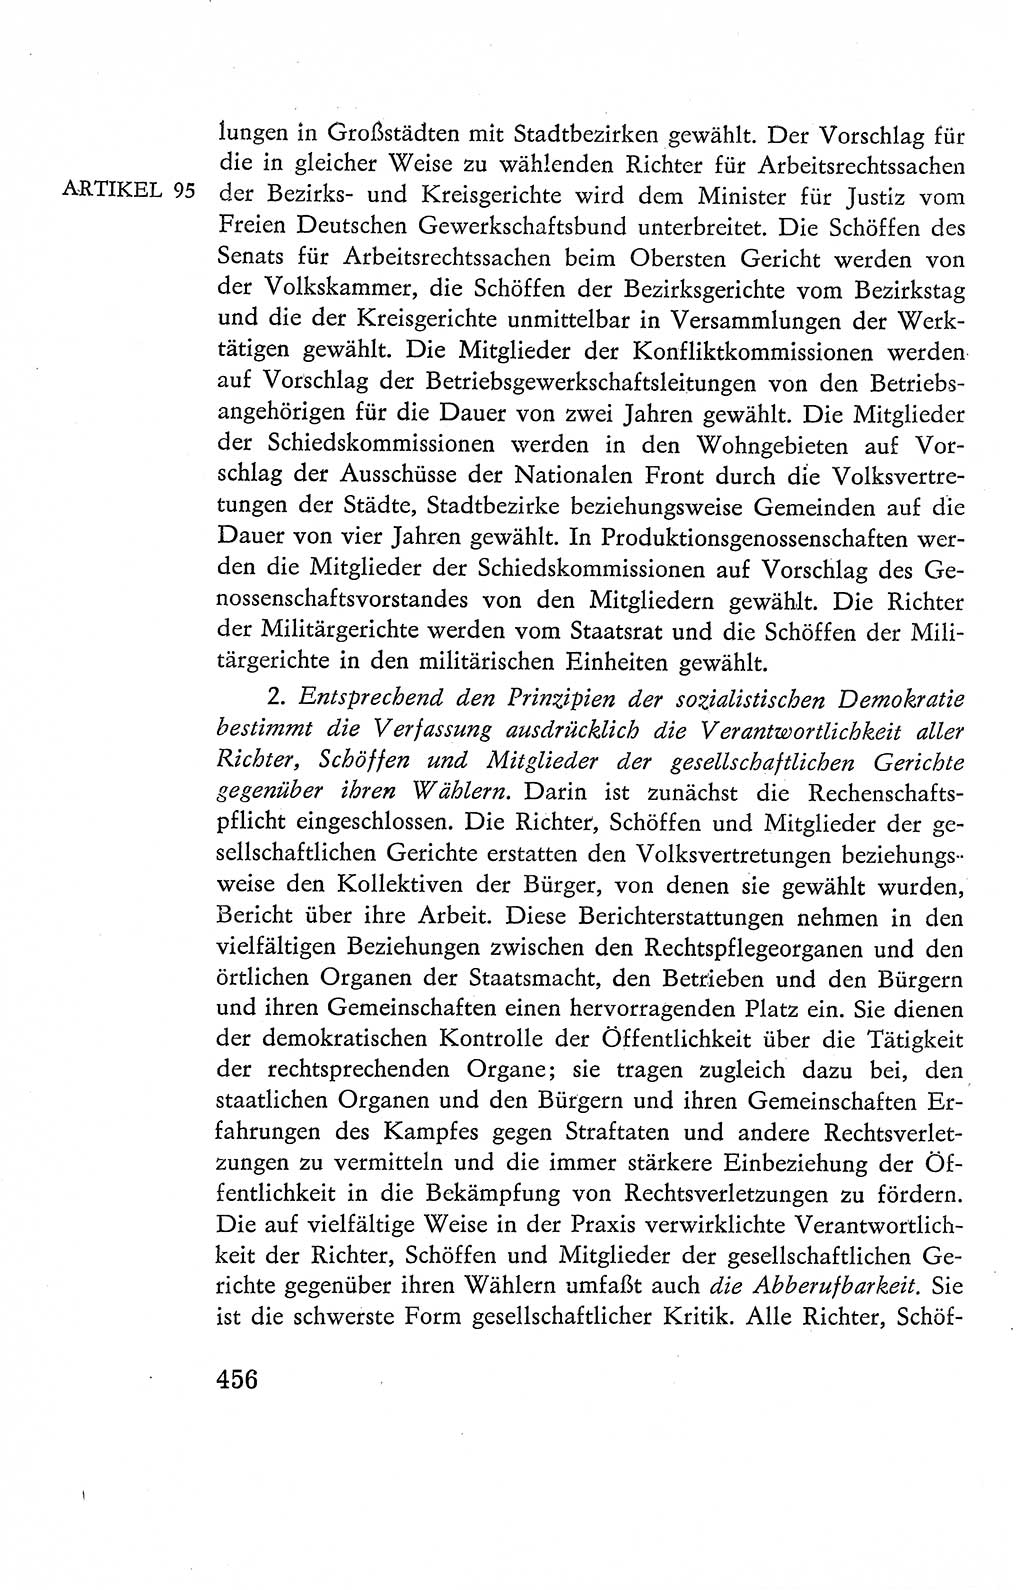 Verfassung der Deutschen Demokratischen Republik (DDR), Dokumente, Kommentar 1969, Band 2, Seite 456 (Verf. DDR Dok. Komm. 1969, Bd. 2, S. 456)